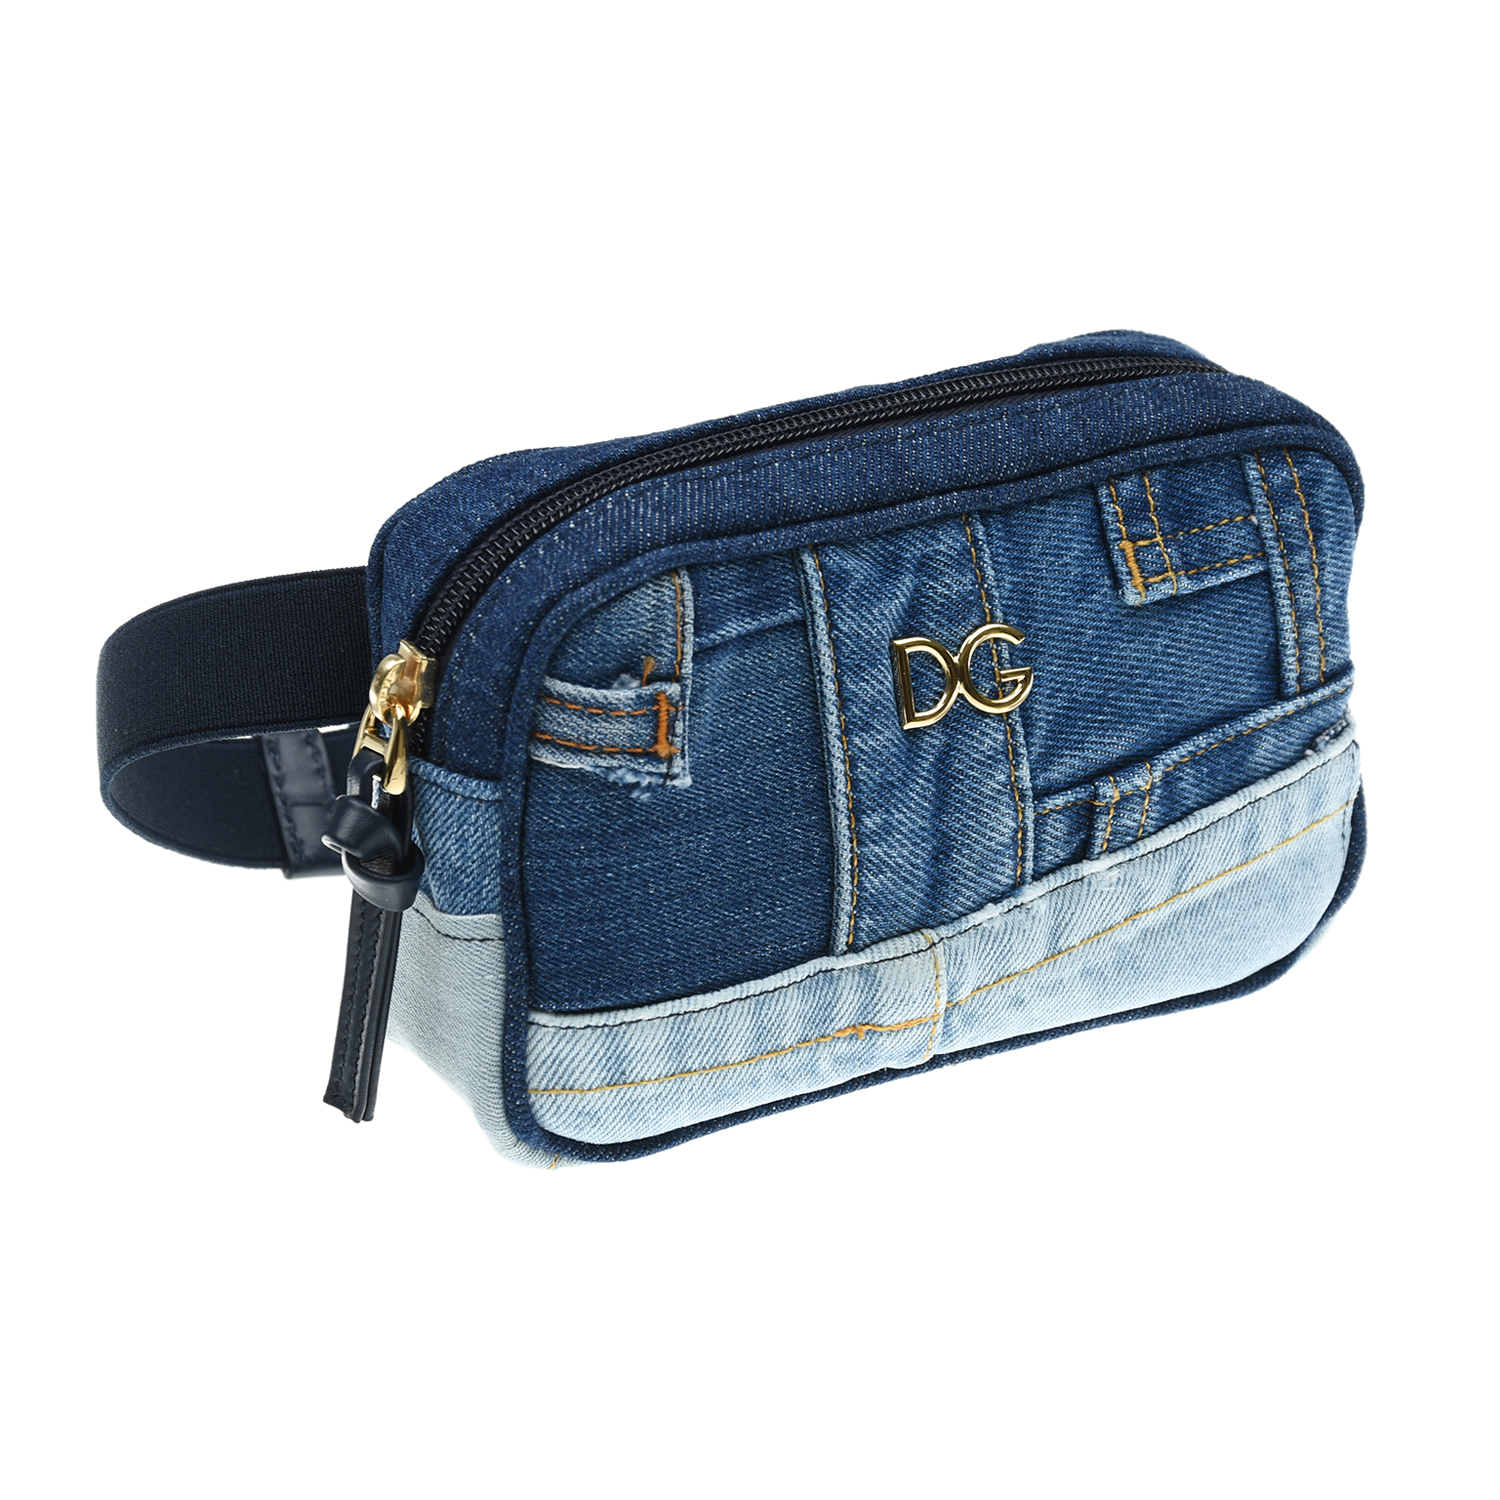 Джинсовая сумка-пояс, 17x11x5 см Dolce&Gabbana детская, размер unica, цвет синий - фото 3